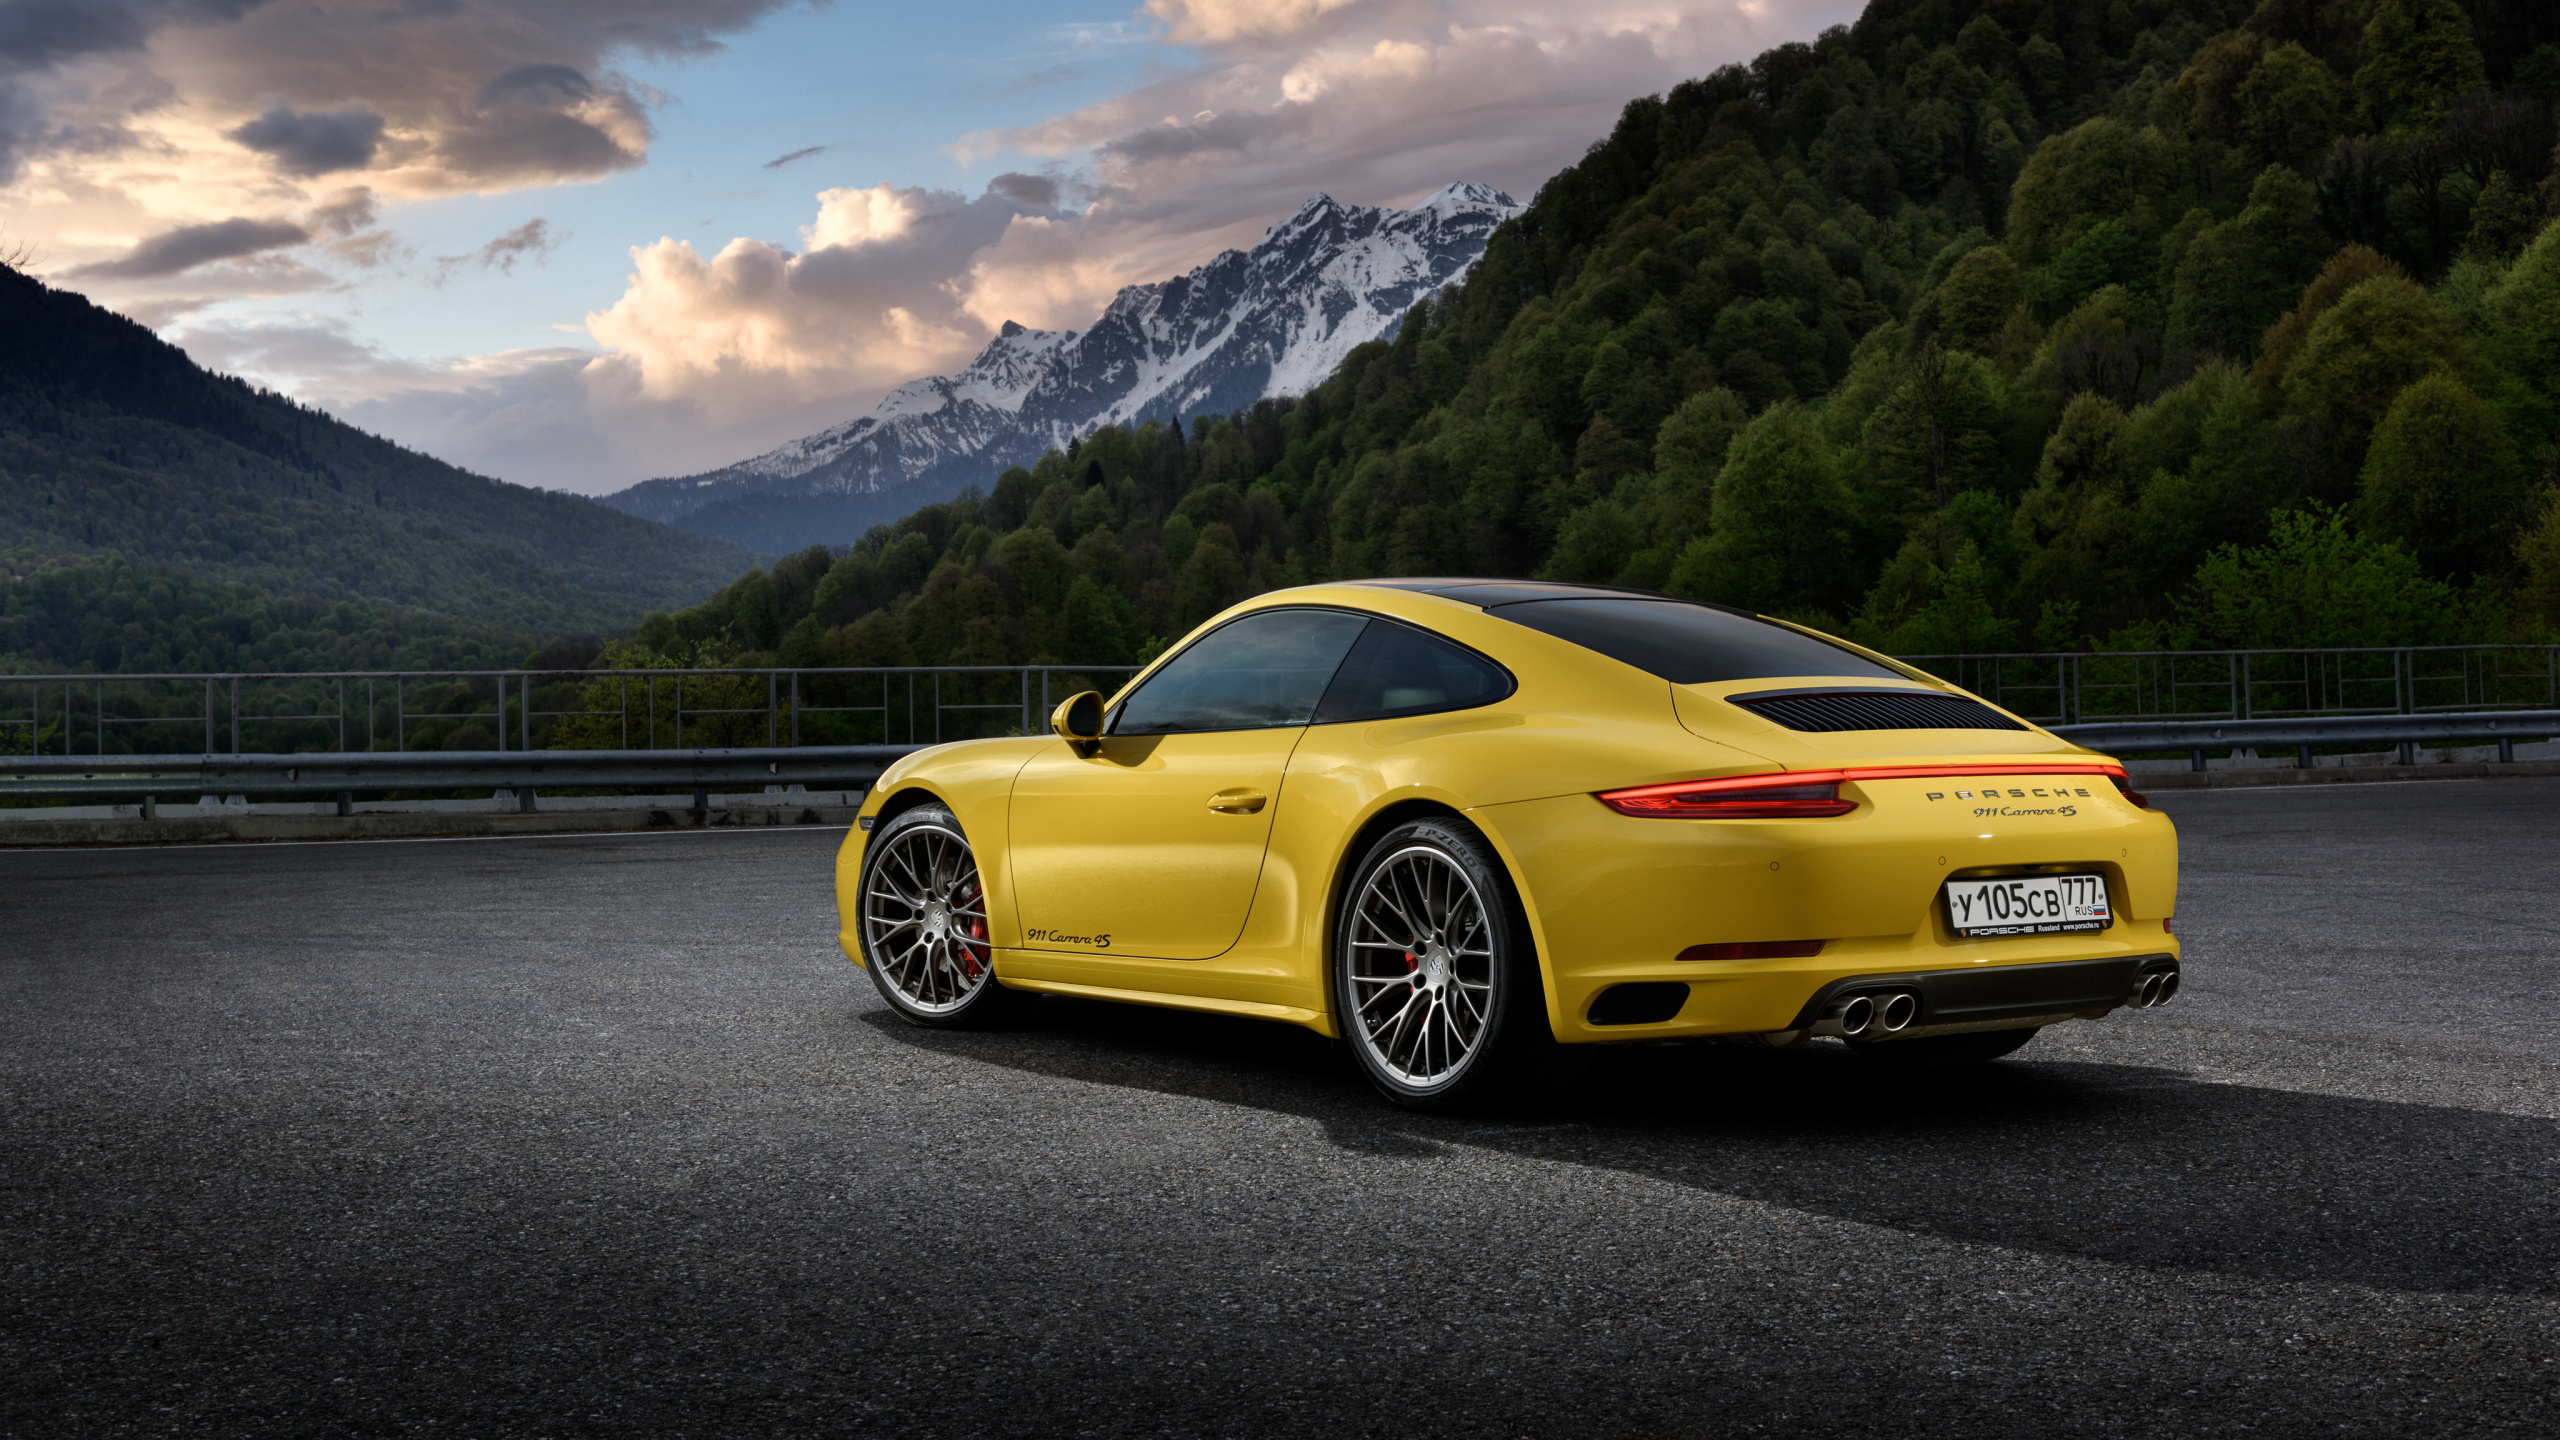 Gelber Porsche 911 Auf Der Straße in Der Nähe Des Berges Tagsüber. Wallpaper in 2560x1440 Resolution